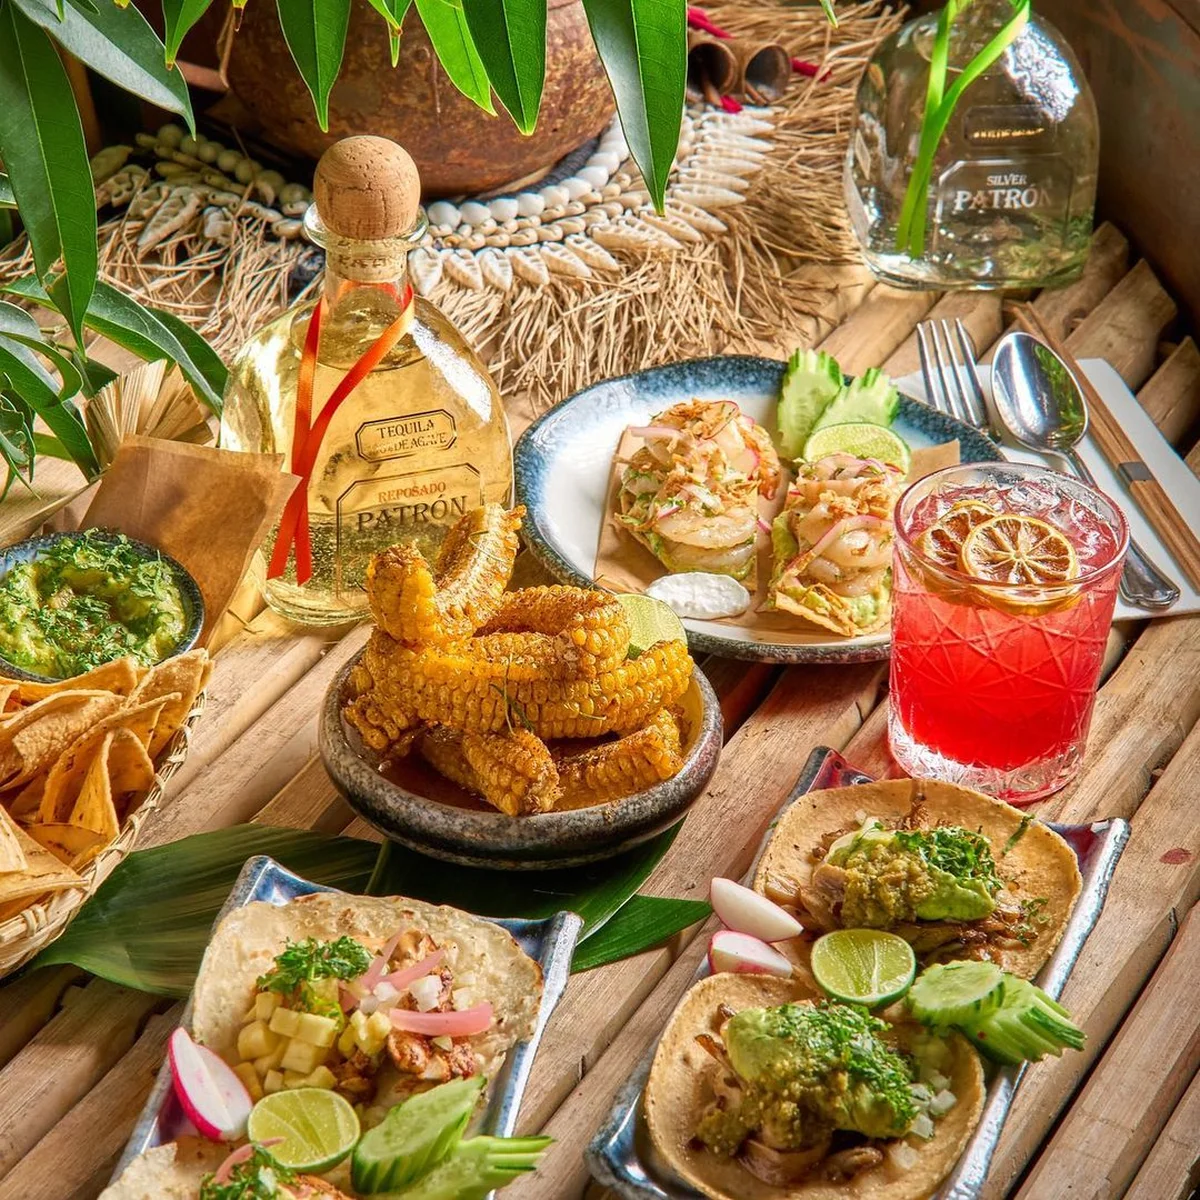 פופ אפ מקסיקני Playa Patron במסעדת קוקו תאי